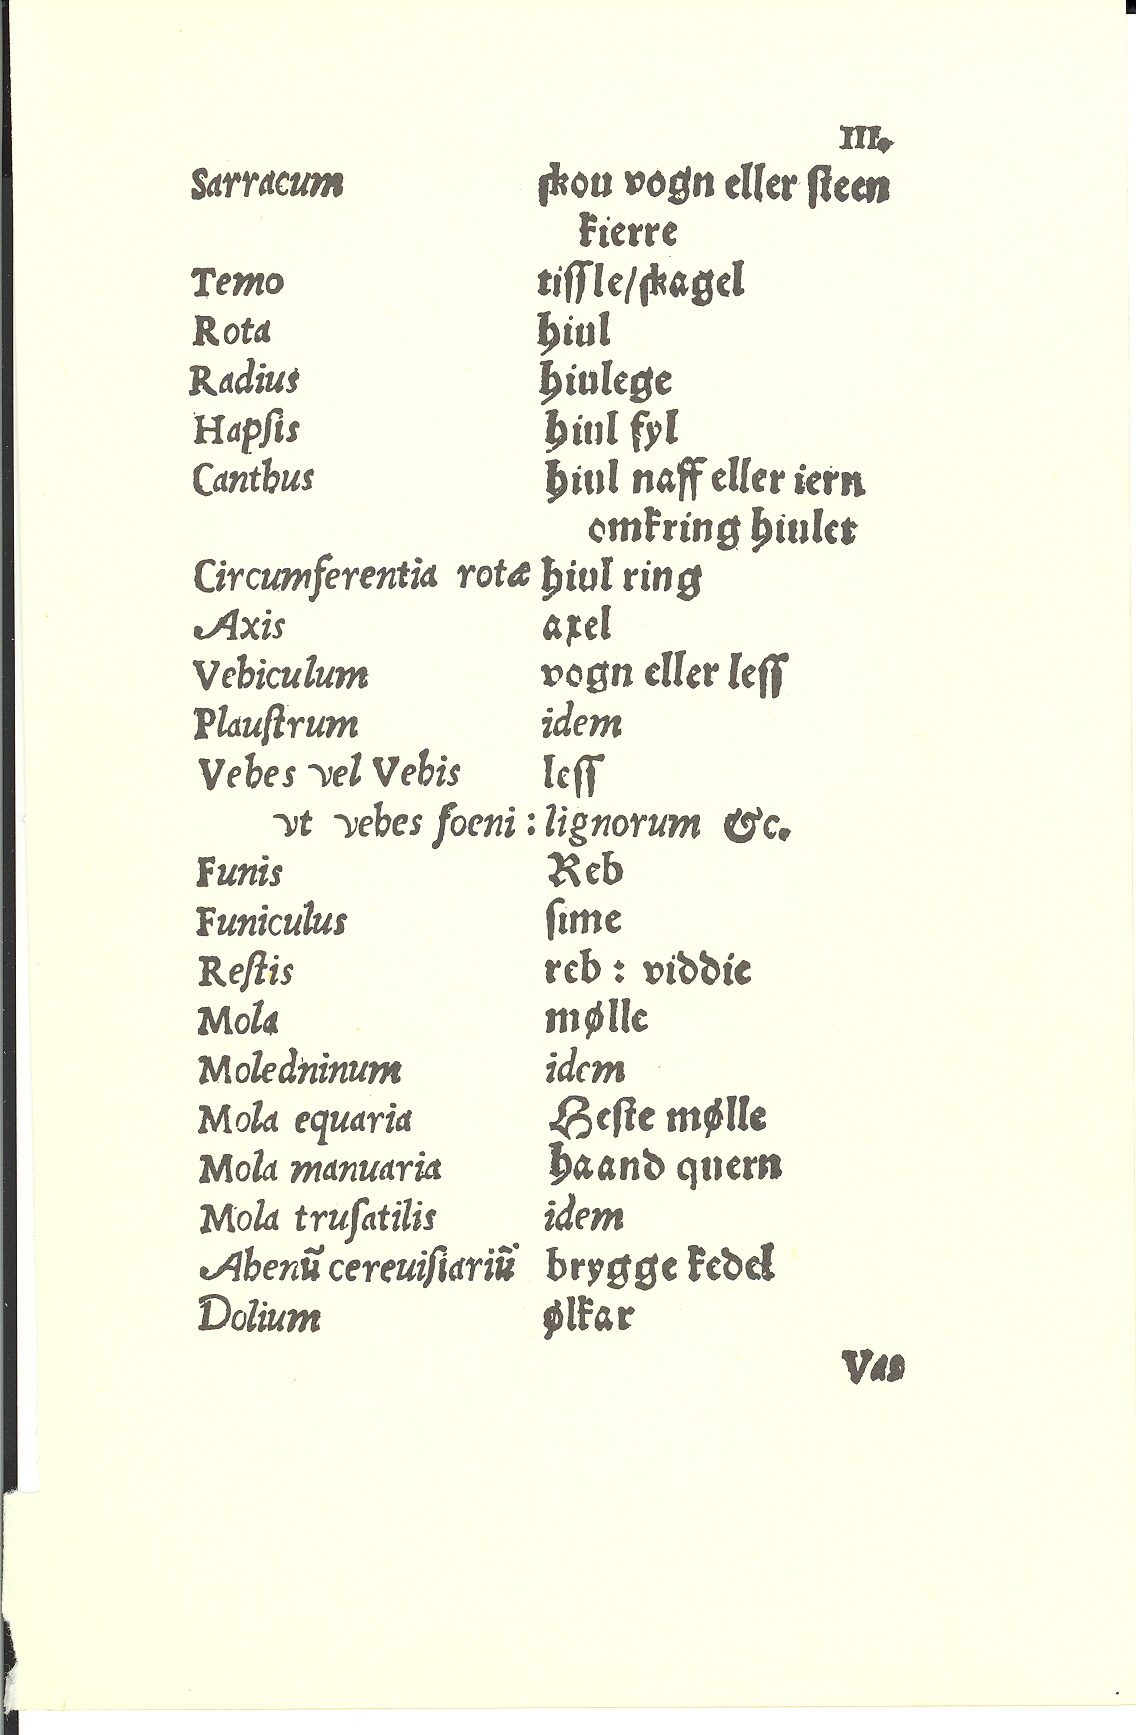 Tursen 1561, Side: 111